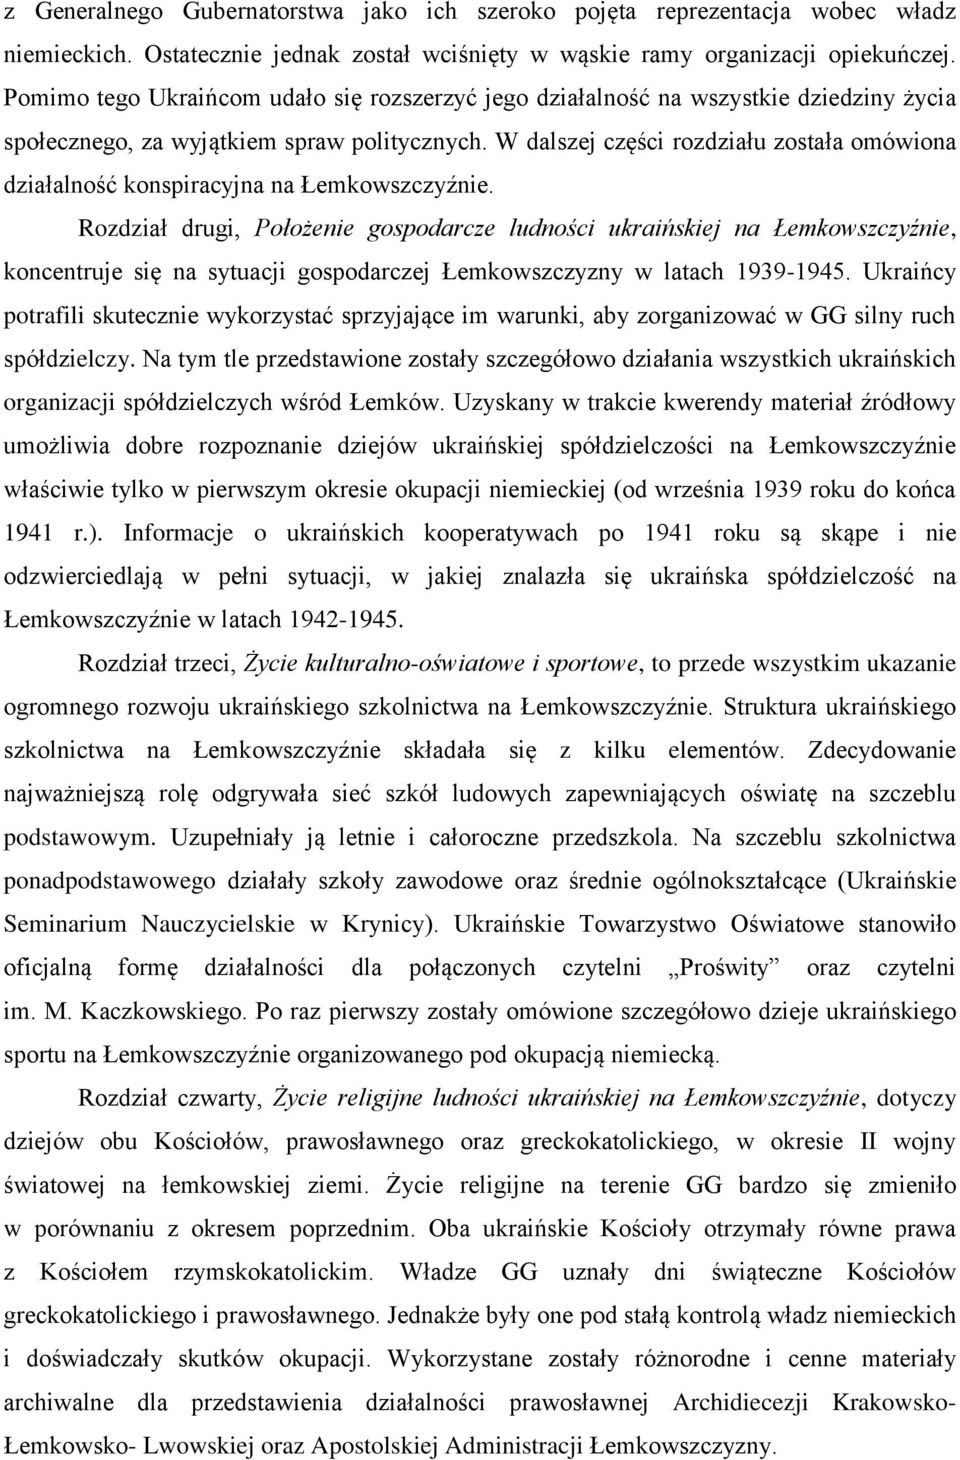 W dalszej części rozdziału została omówiona działalność konspiracyjna na Łemkowszczyźnie.